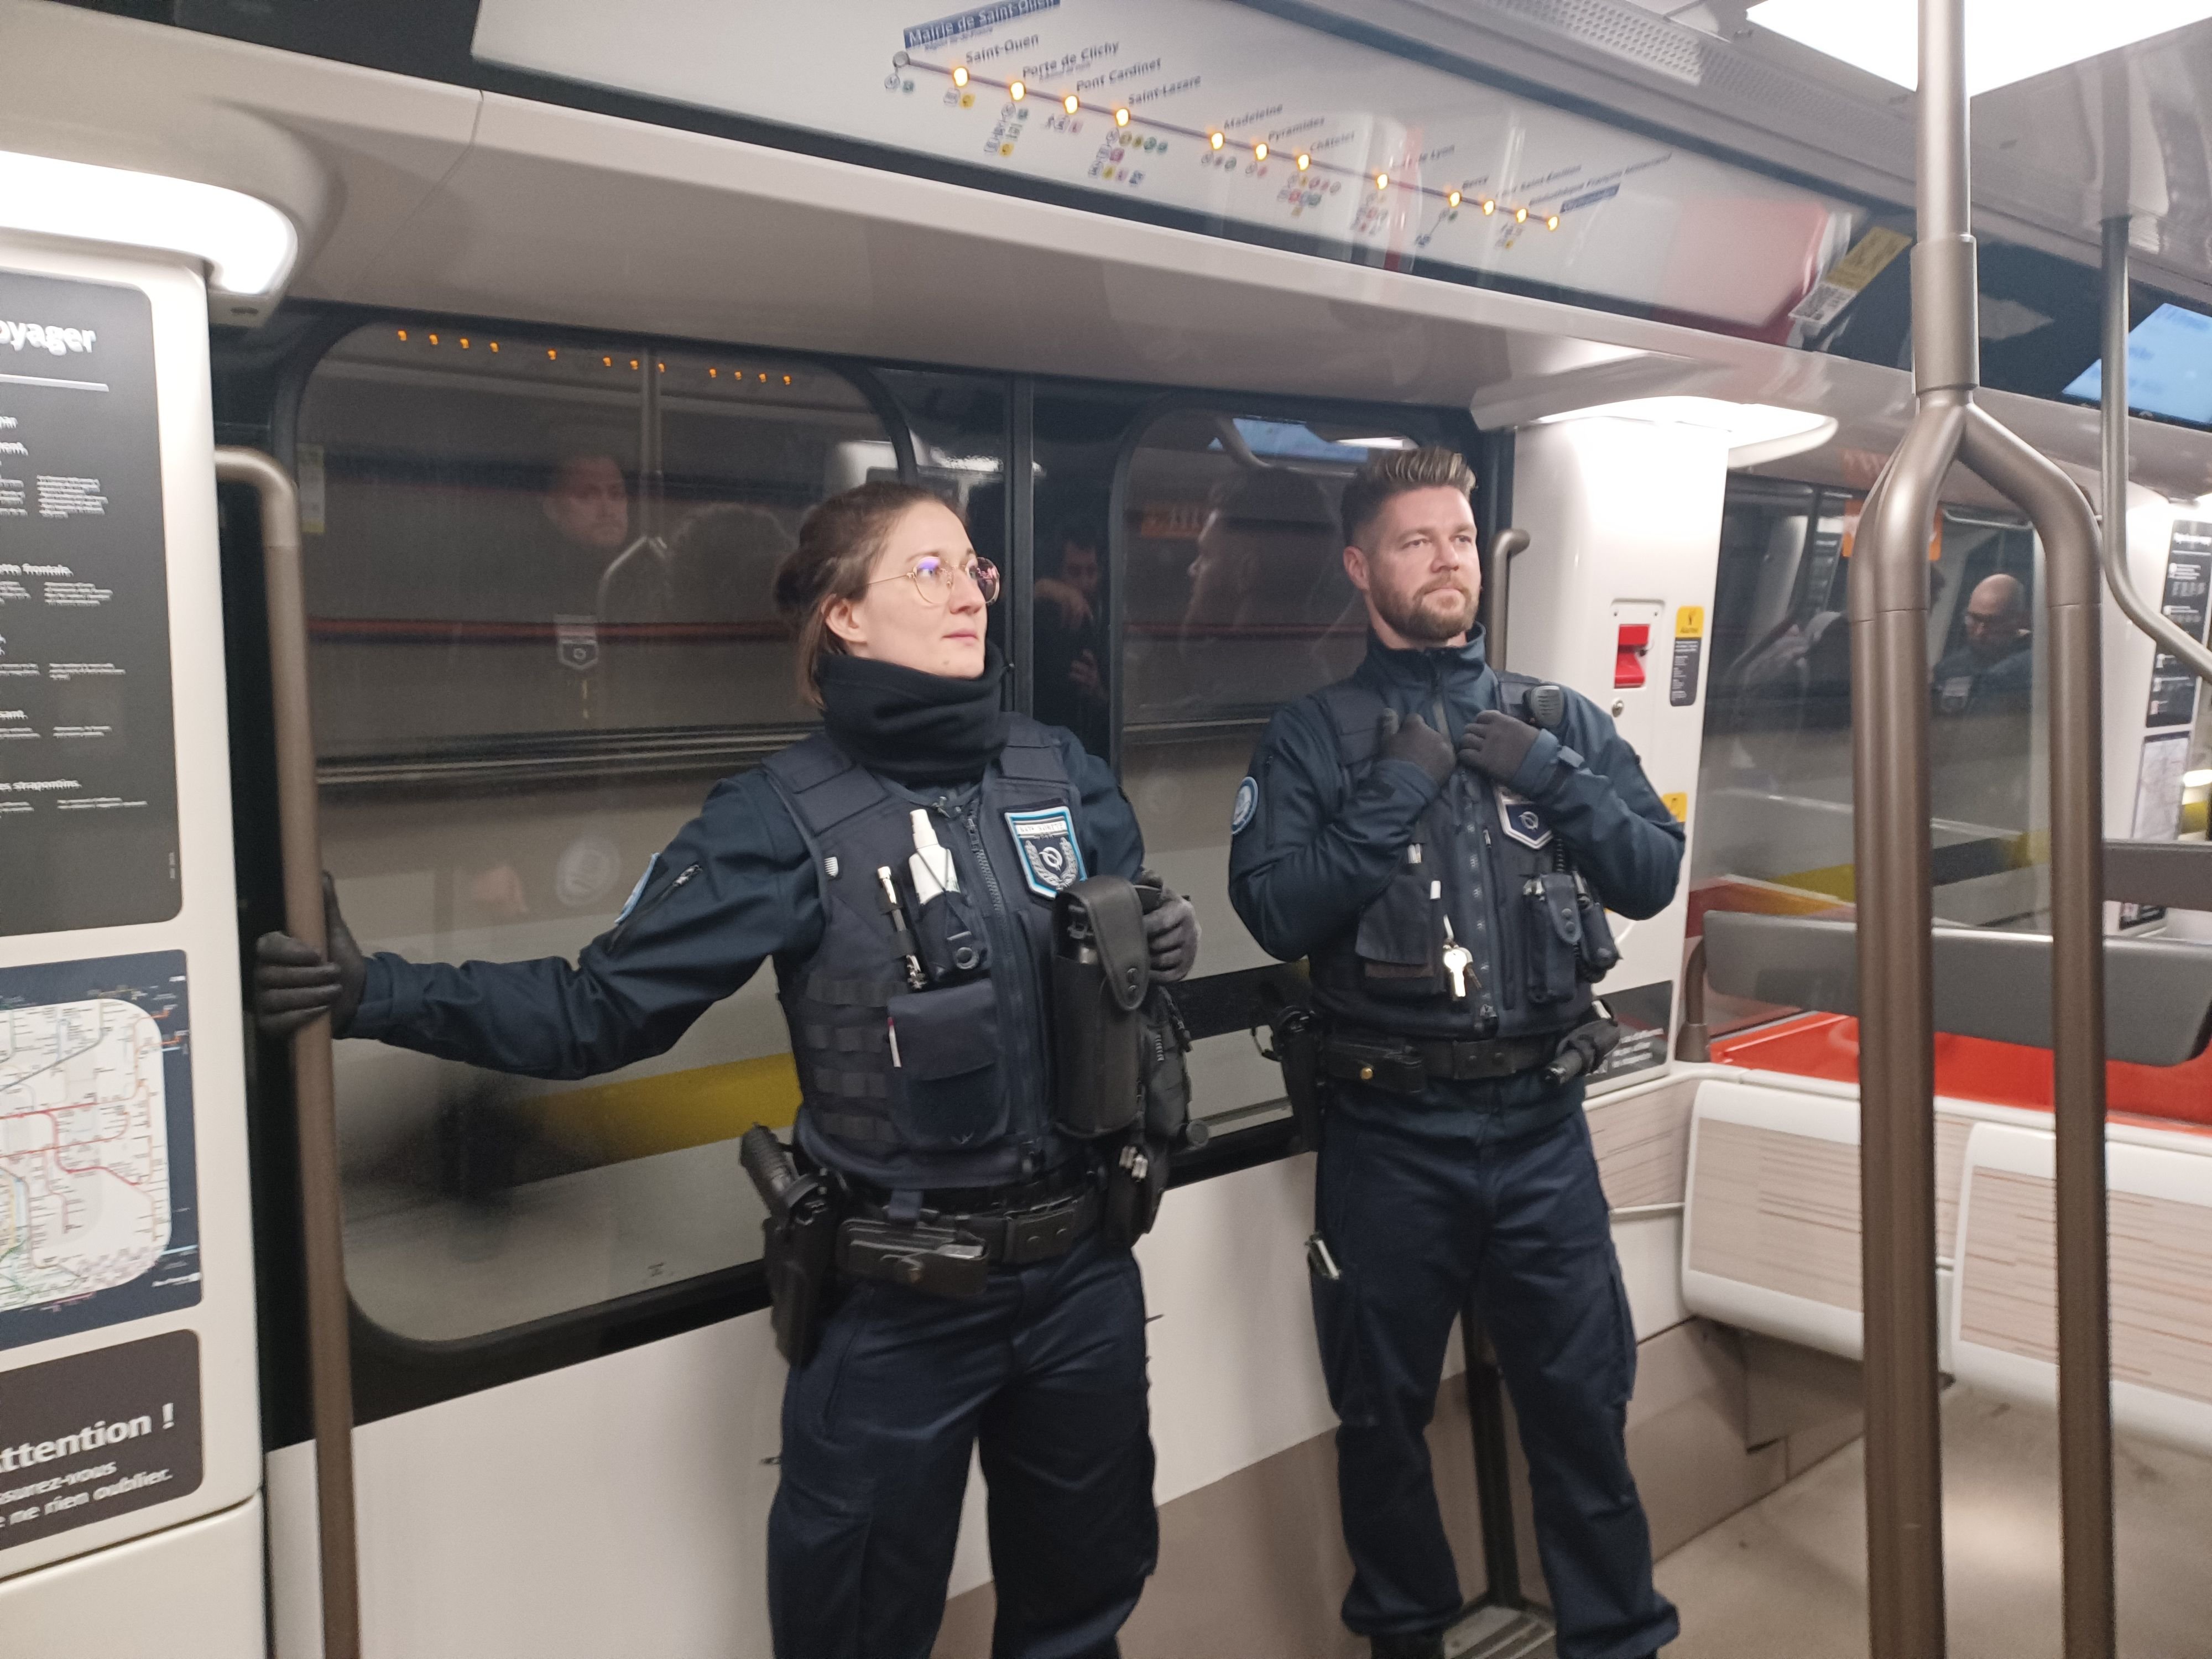 La RATP recrute 120 agents de sûreté, les équipes du GPSR (Groupe de protection et de sécurité des réseaux) que Mégane et Nicolas ont intégrées. LP/Jila Varoquier